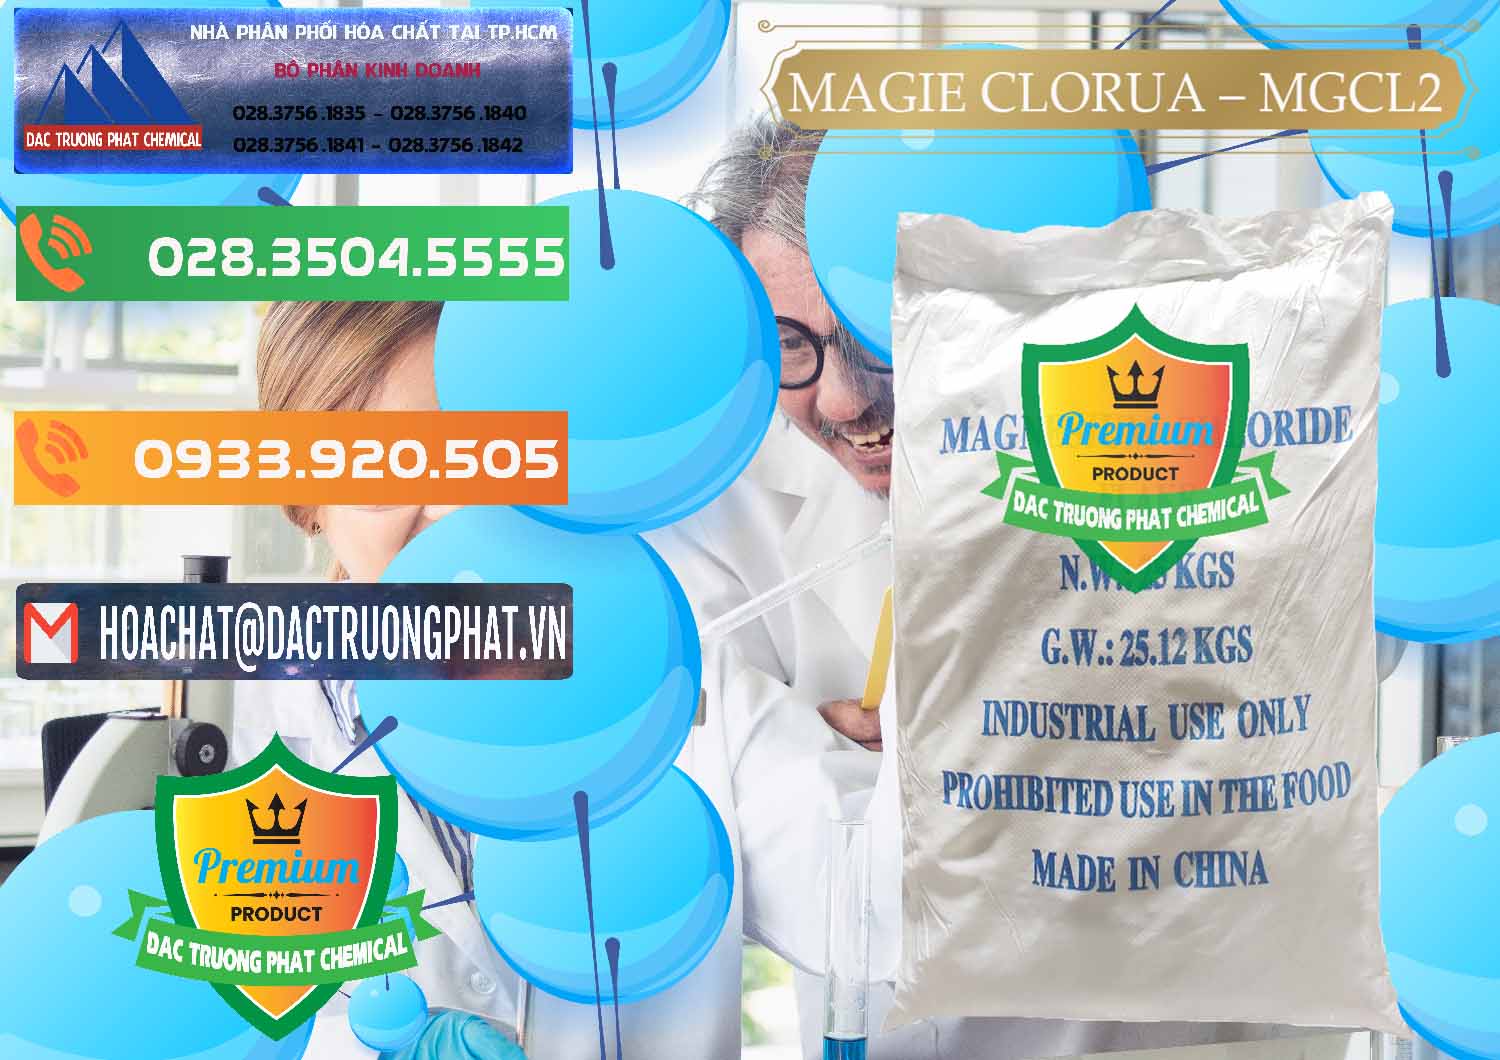 Công ty bán và cung cấp Magie Clorua – MGCL2 96% Dạng Vảy Trung Quốc China - 0091 - Đơn vị chuyên bán và phân phối hóa chất tại TP.HCM - hoachatxulynuoc.com.vn